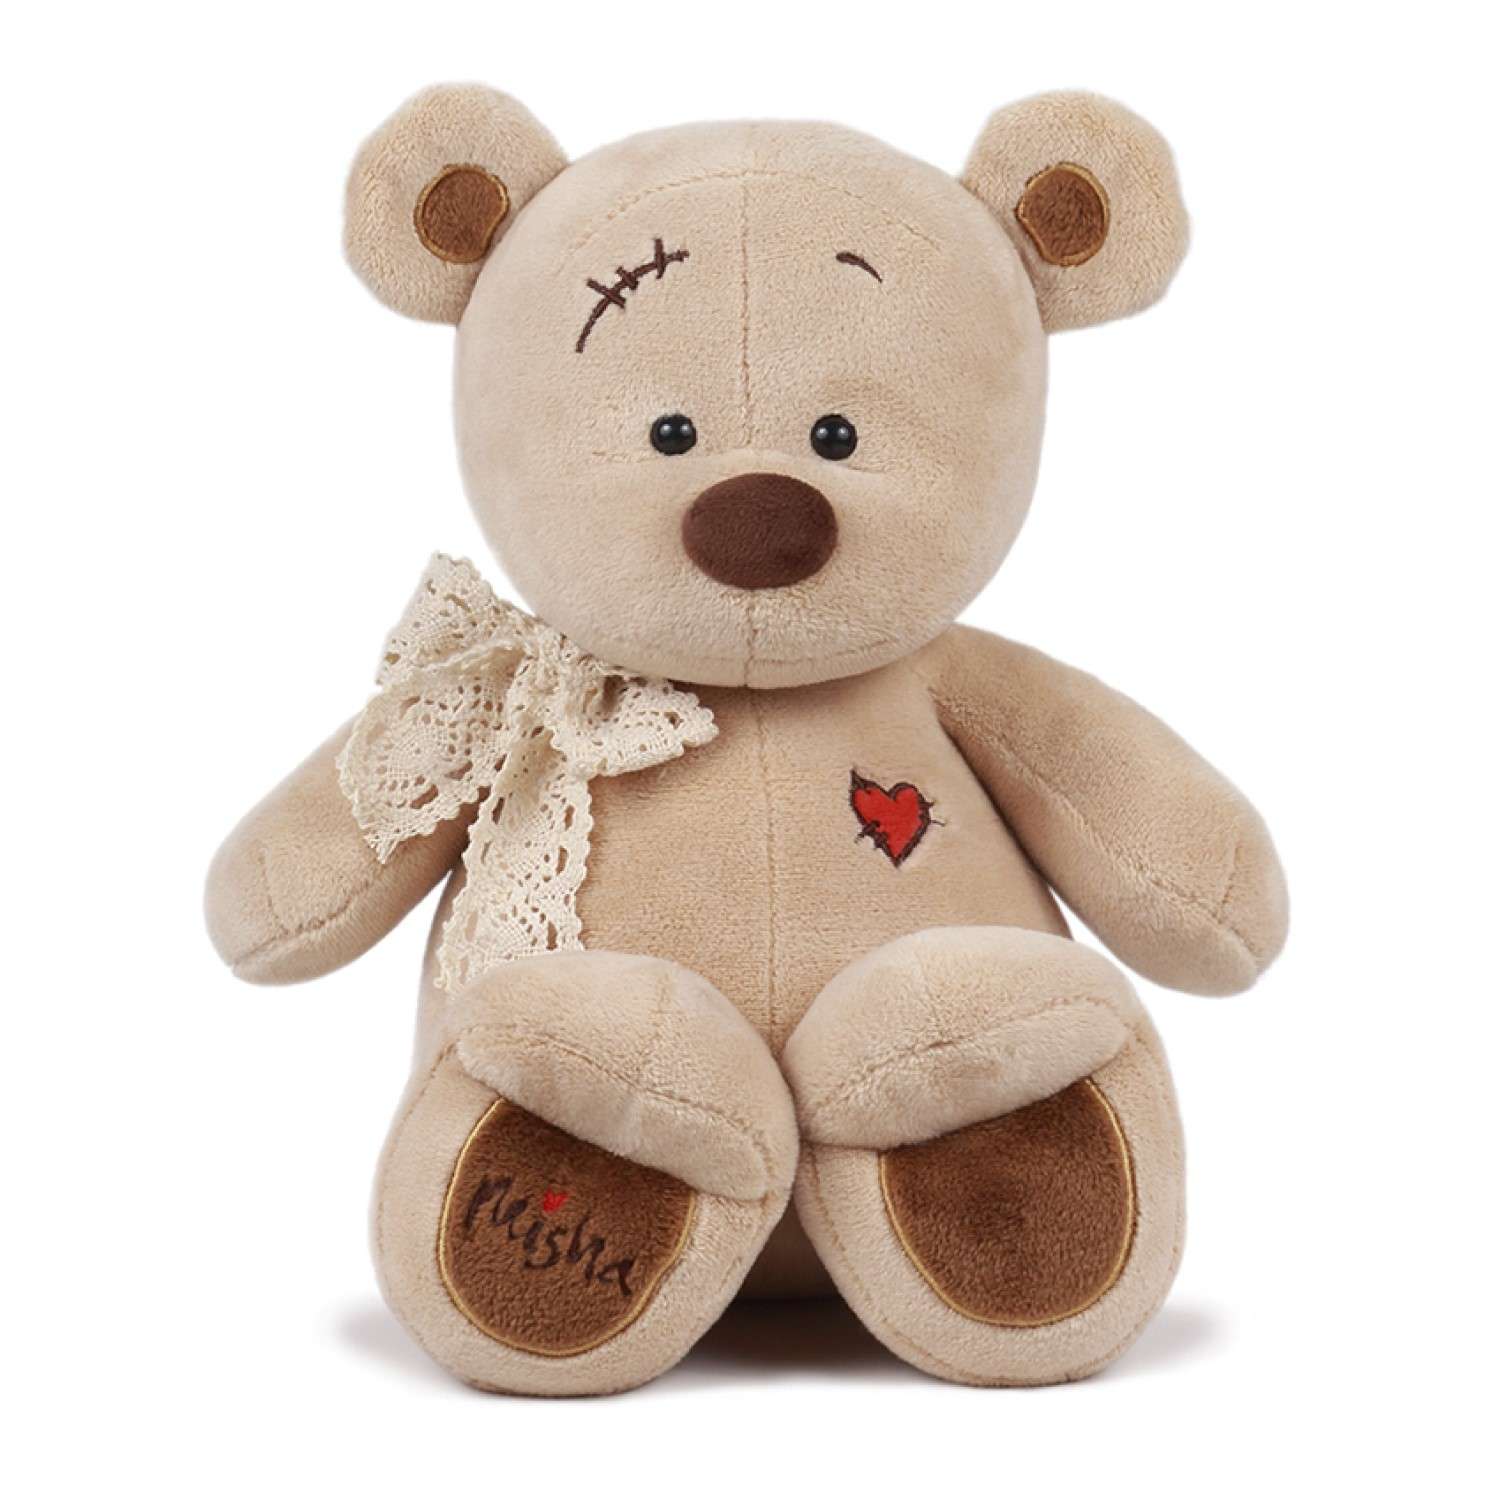 Мягкая игрушка KULT of toys плюшевый медведь в подарочной коробке misha подарок для девочки 30 см - фото 1